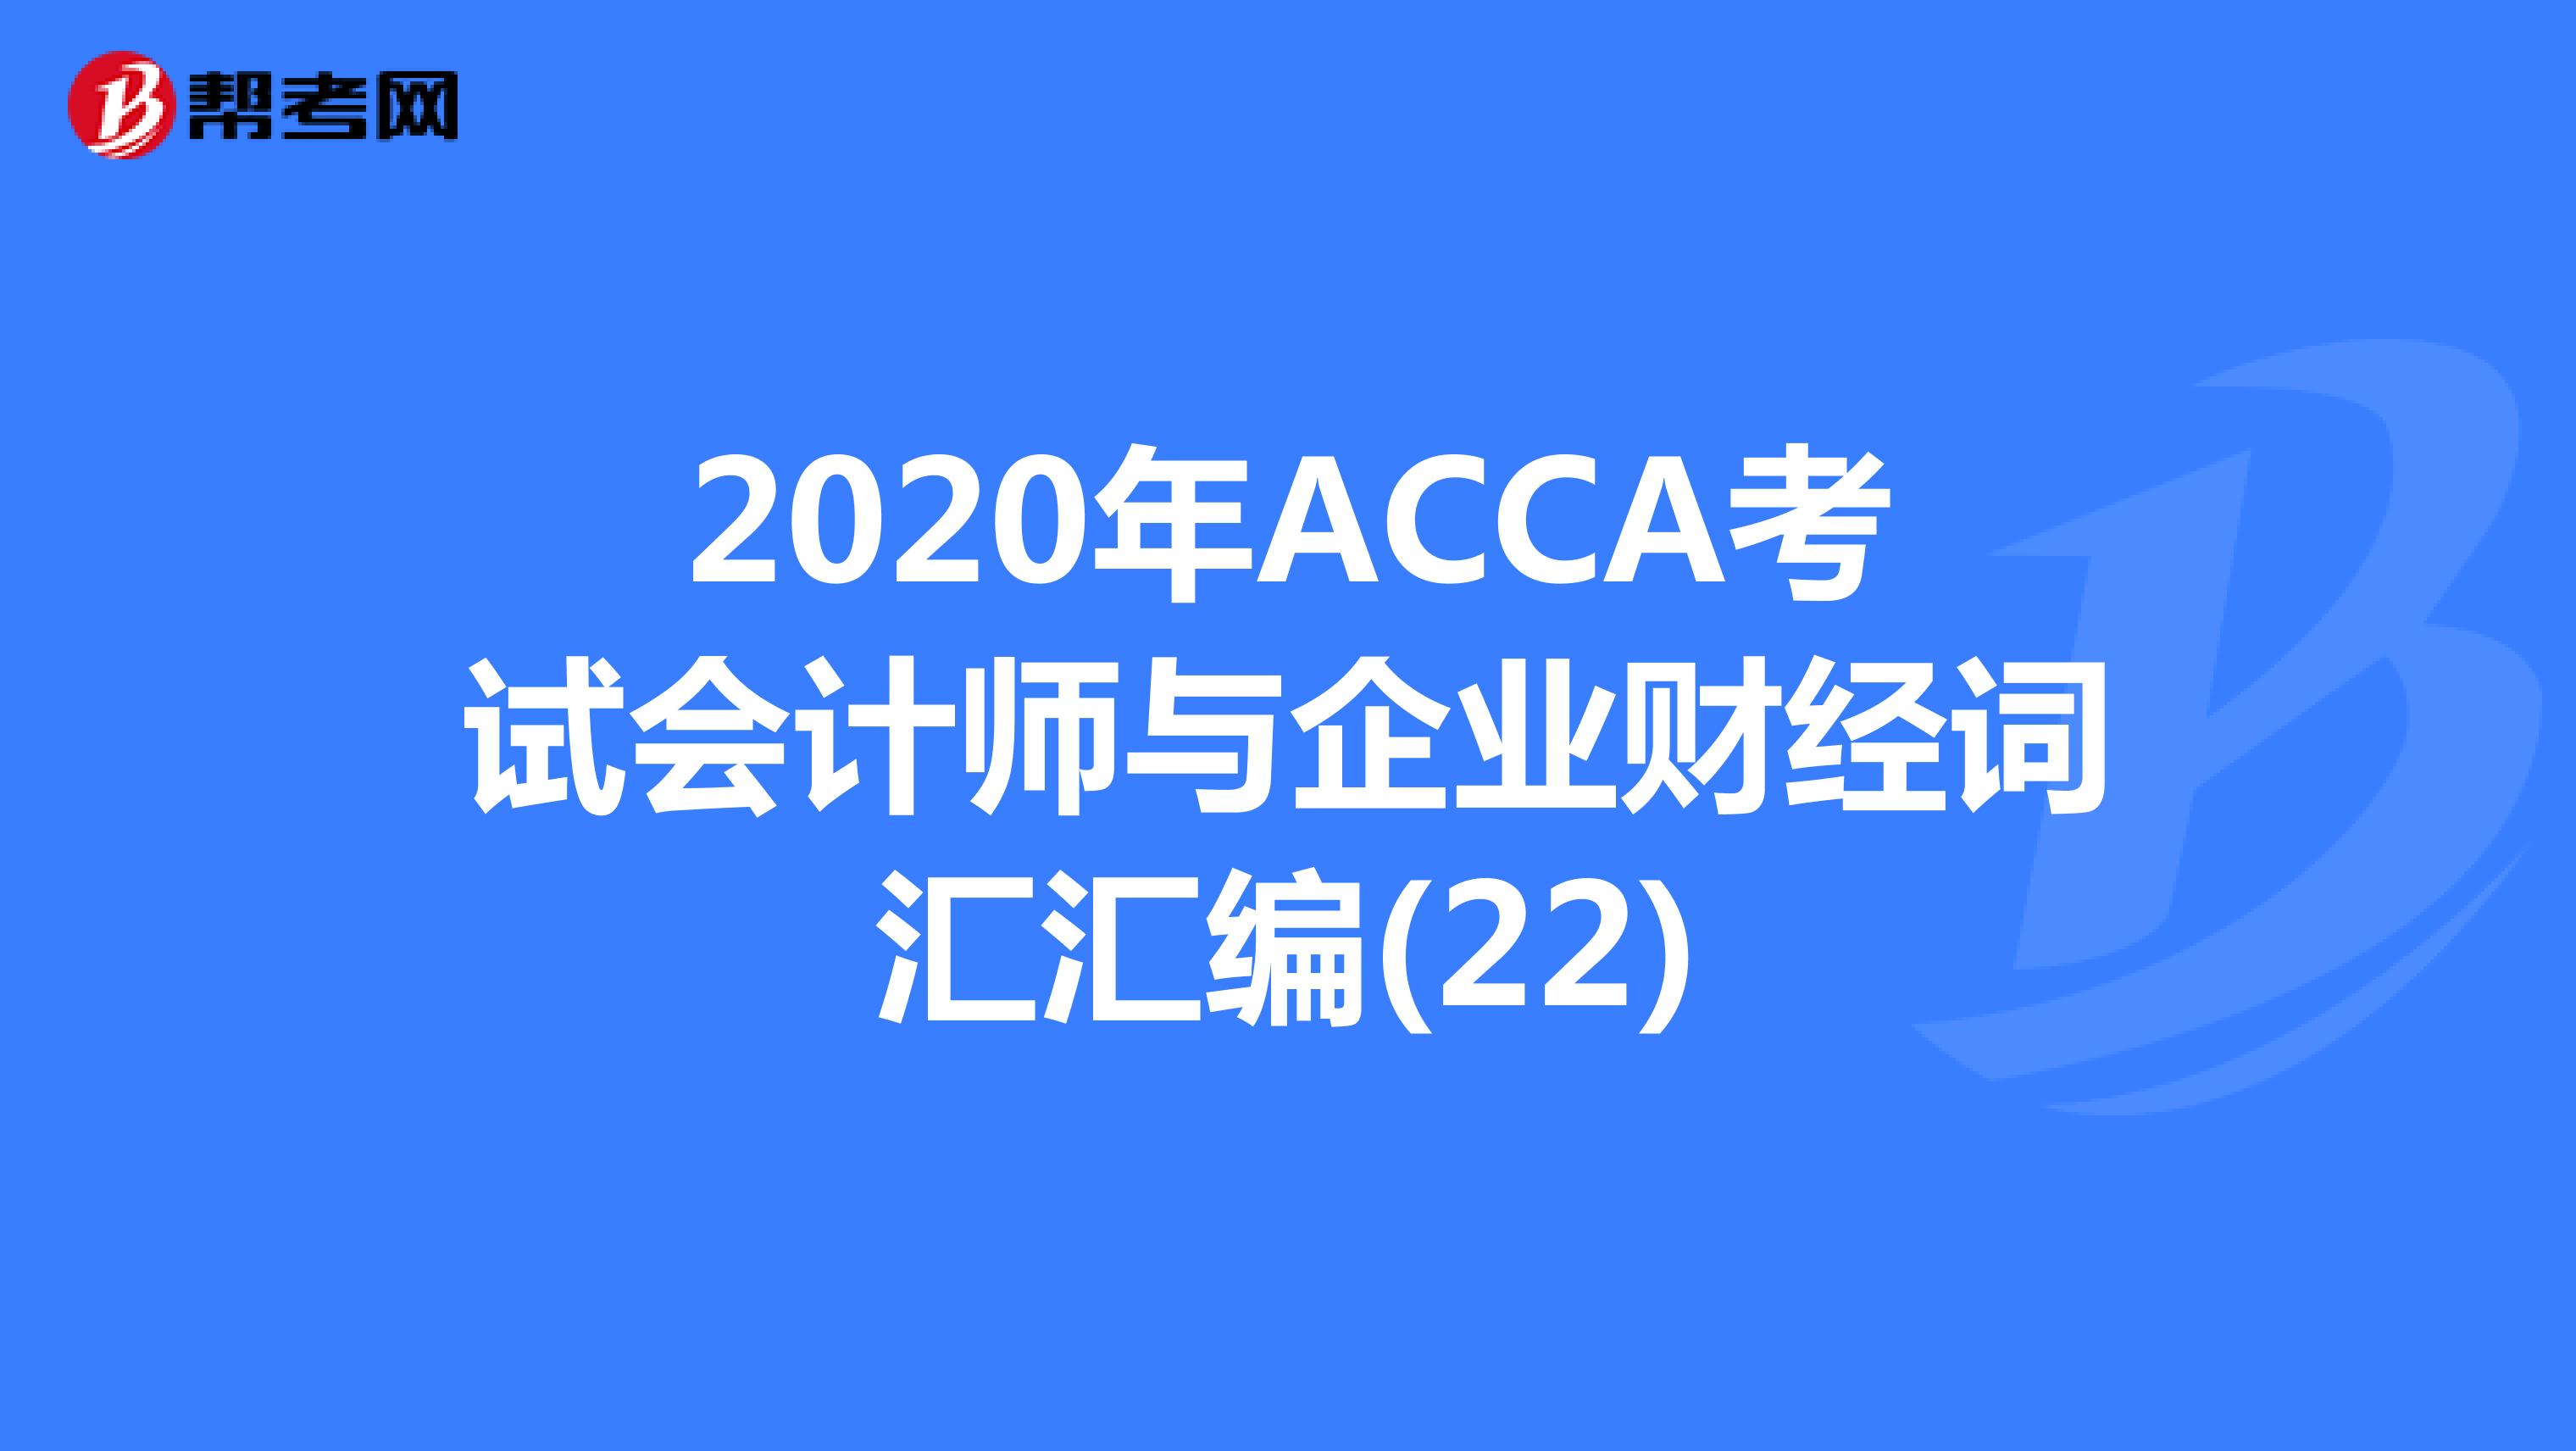 2020年ACCA考试会计师与企业财经词汇汇编(22)